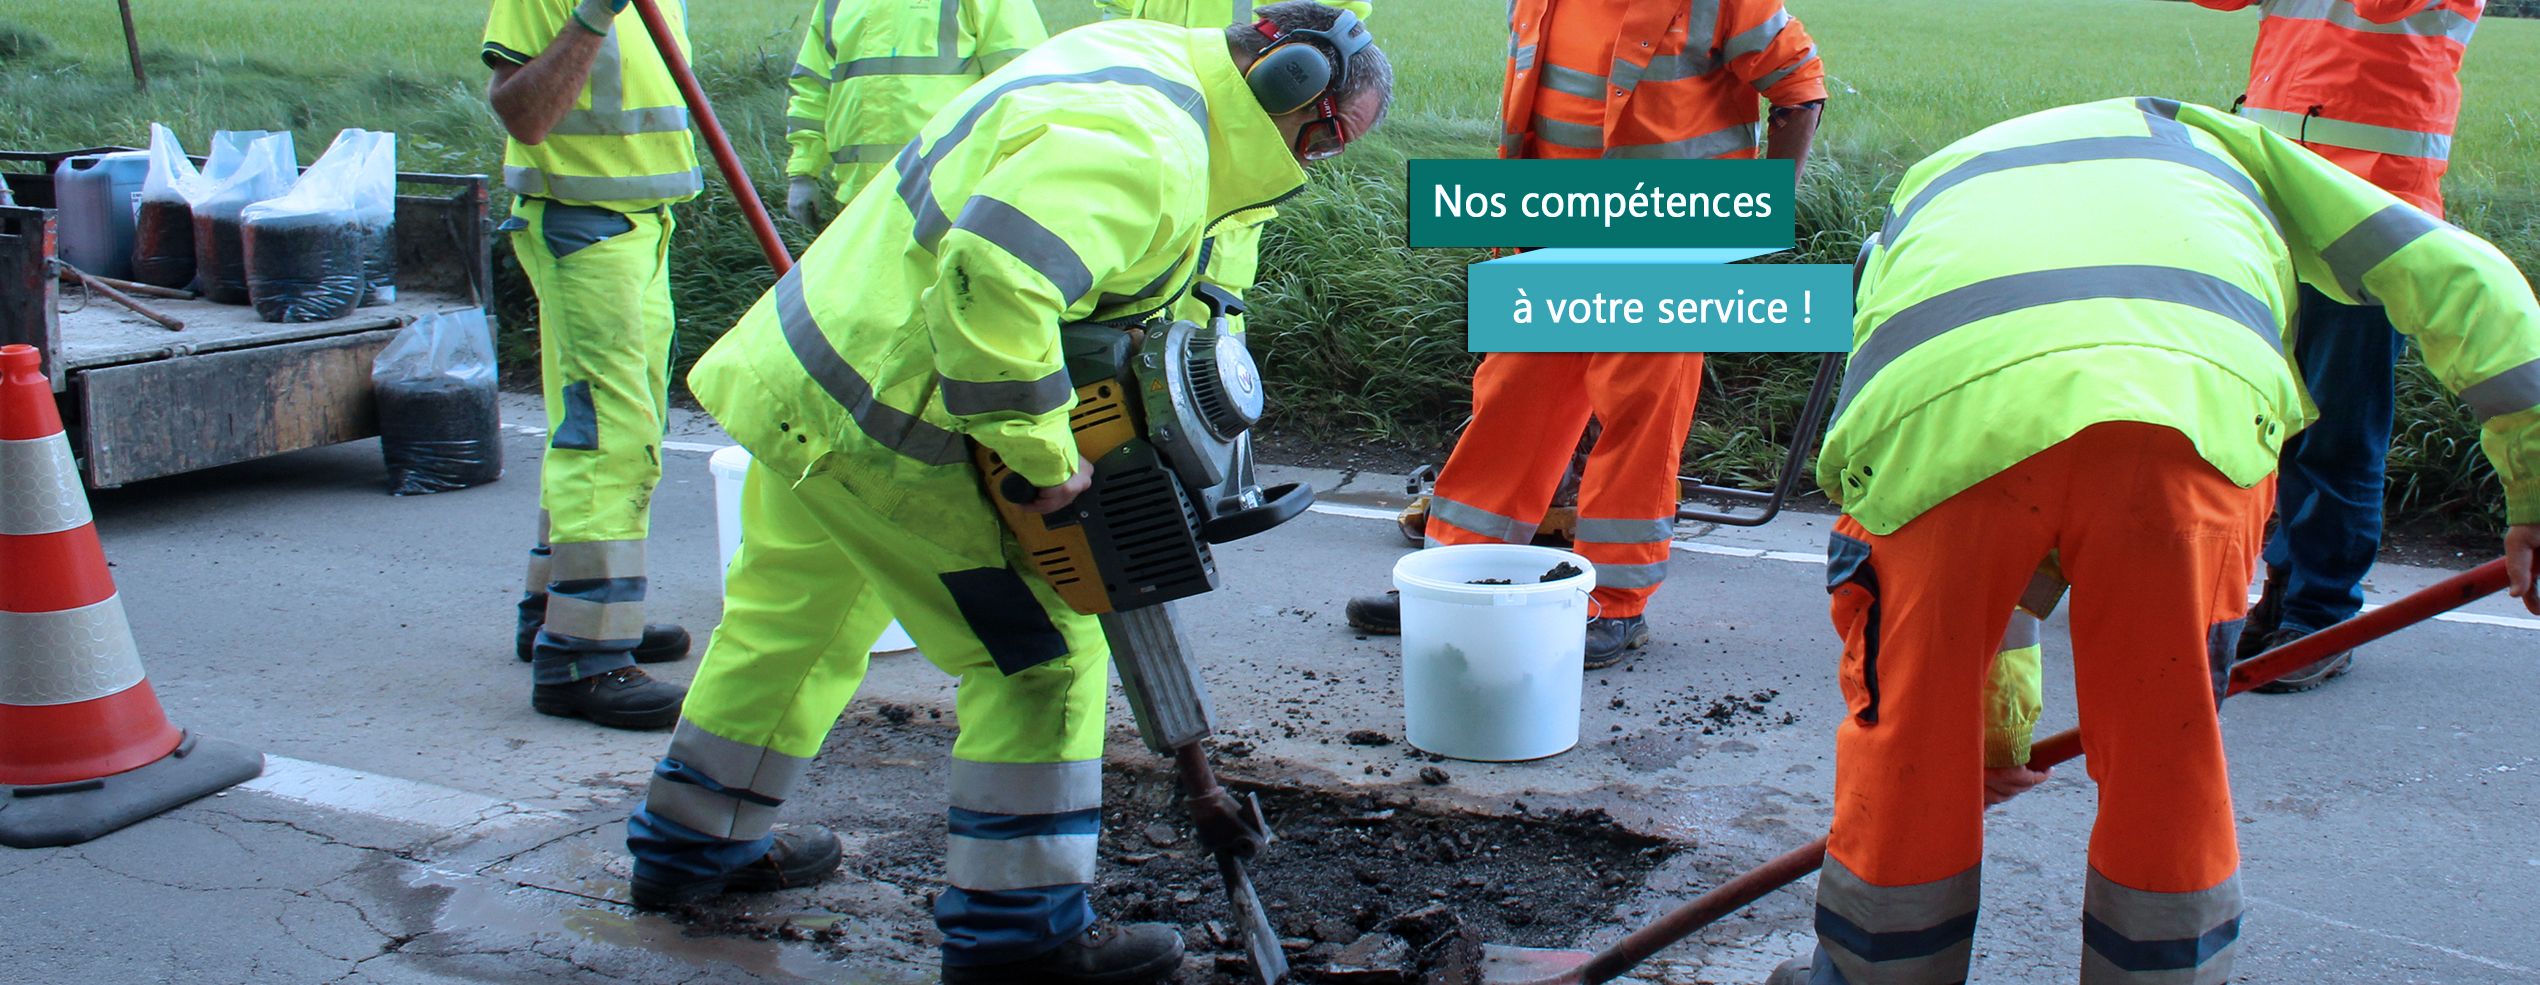 nos-competences_a-votre-service3.jpg